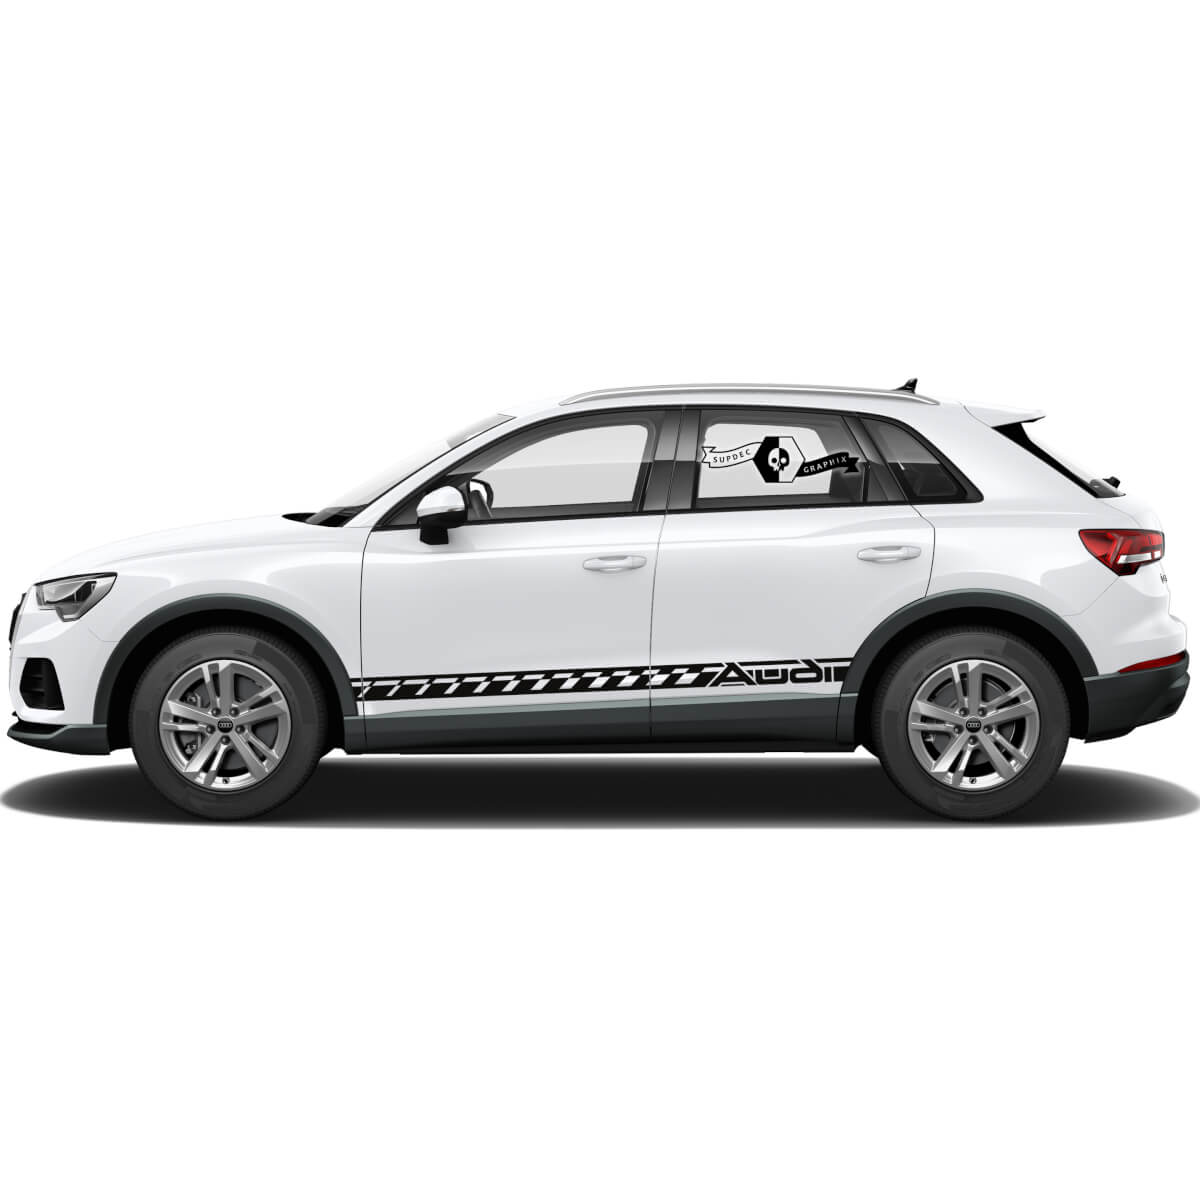 Coppia adesivi Audi Q3 lato porta per pannello bilanciere Rally 2021 adesivo decalcomania in vinile
